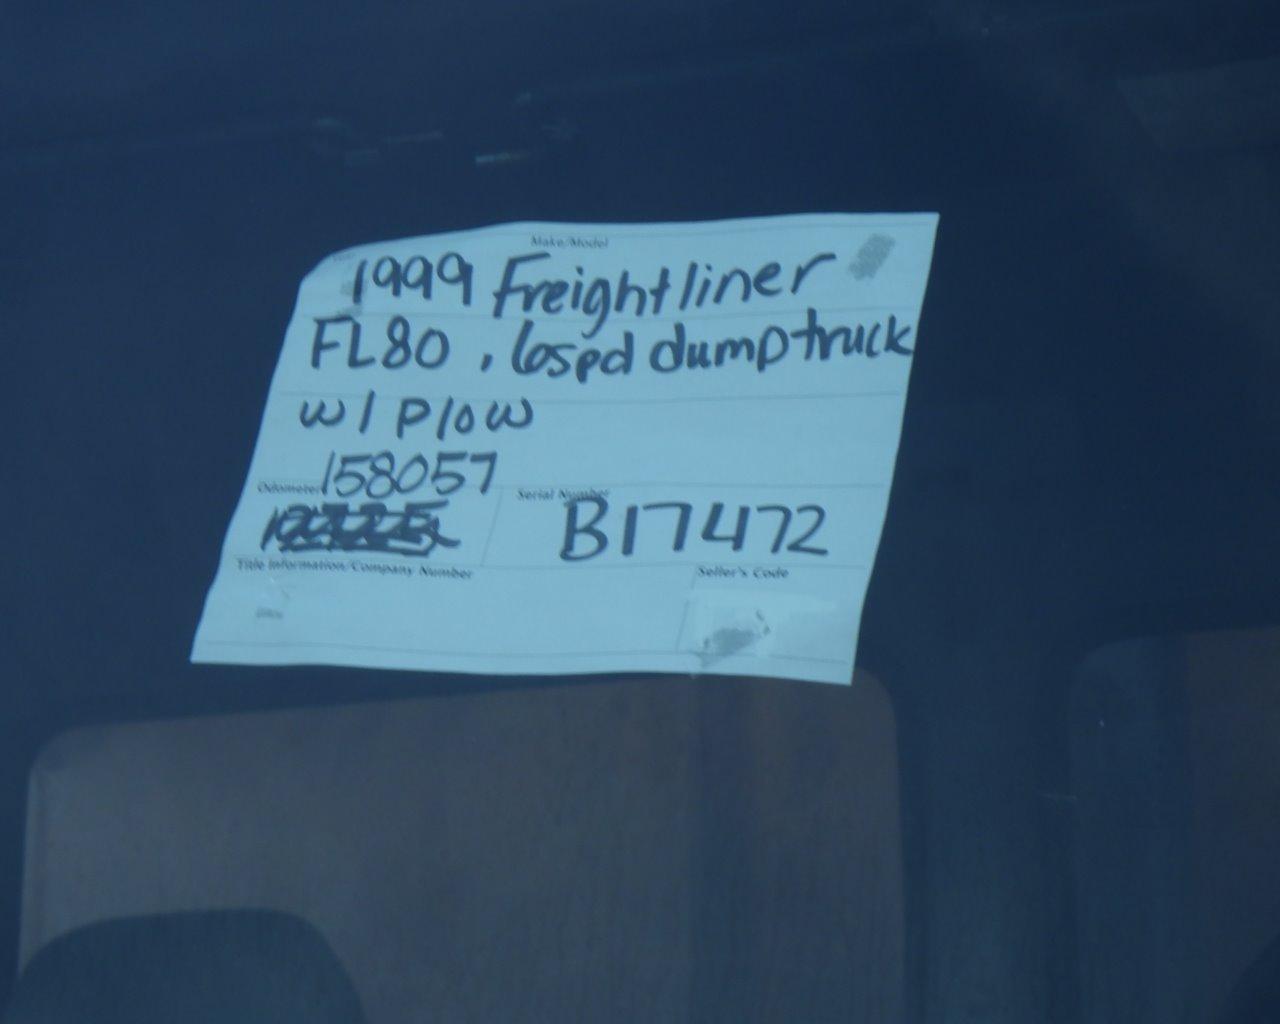 1999 FREIGHTLINER FL80 Dump Truck w/Plow   6 spd s/n:B17472